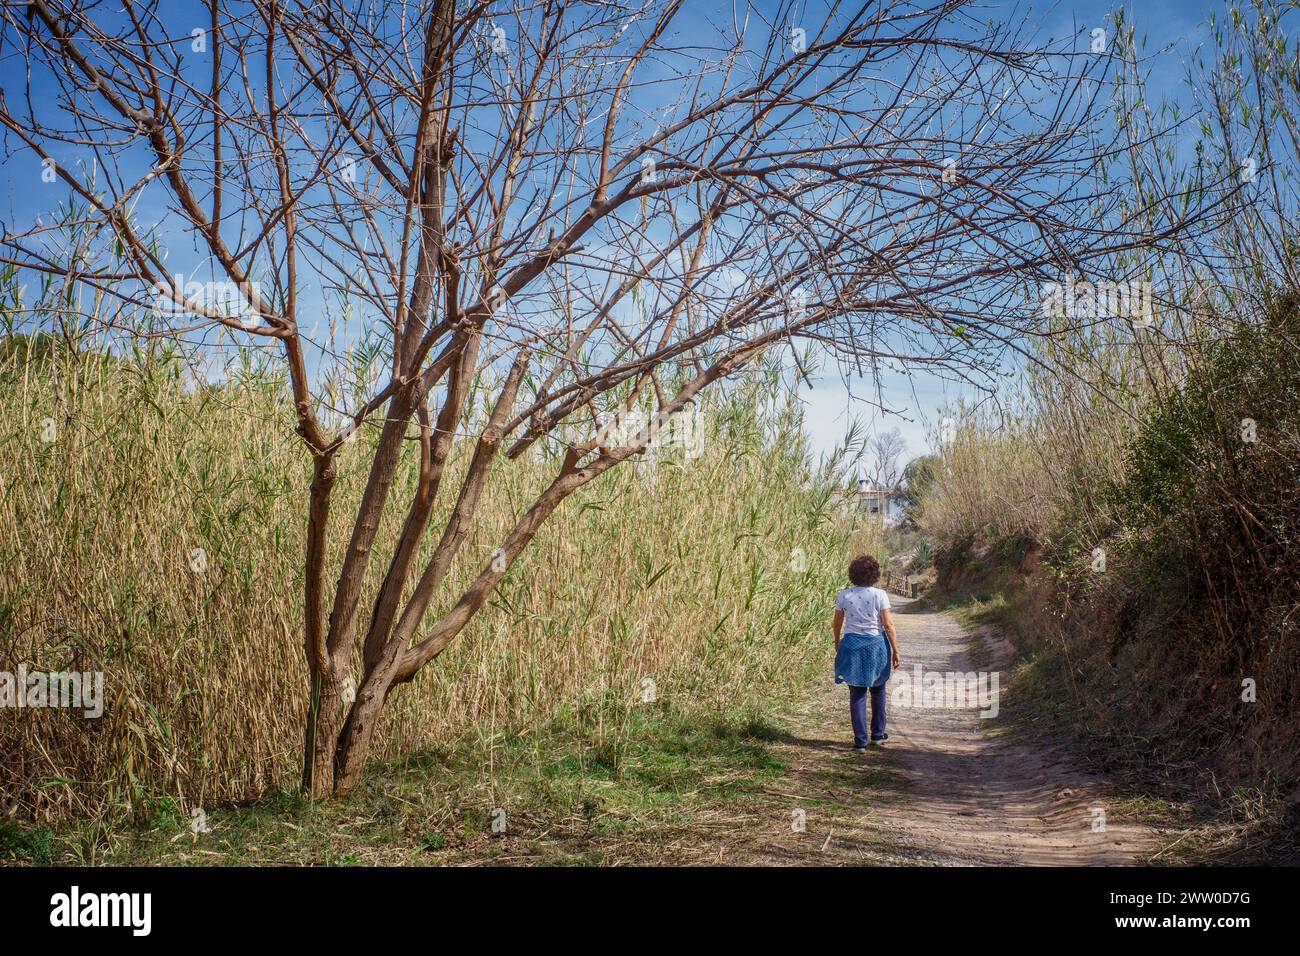 Femme seule marchant le long du chemin de terre plein de roseaux et de végétation, sur la rive de la rivière Mijares, Villarreal, Communauté valencienne, Espagne, Europe Banque D'Images